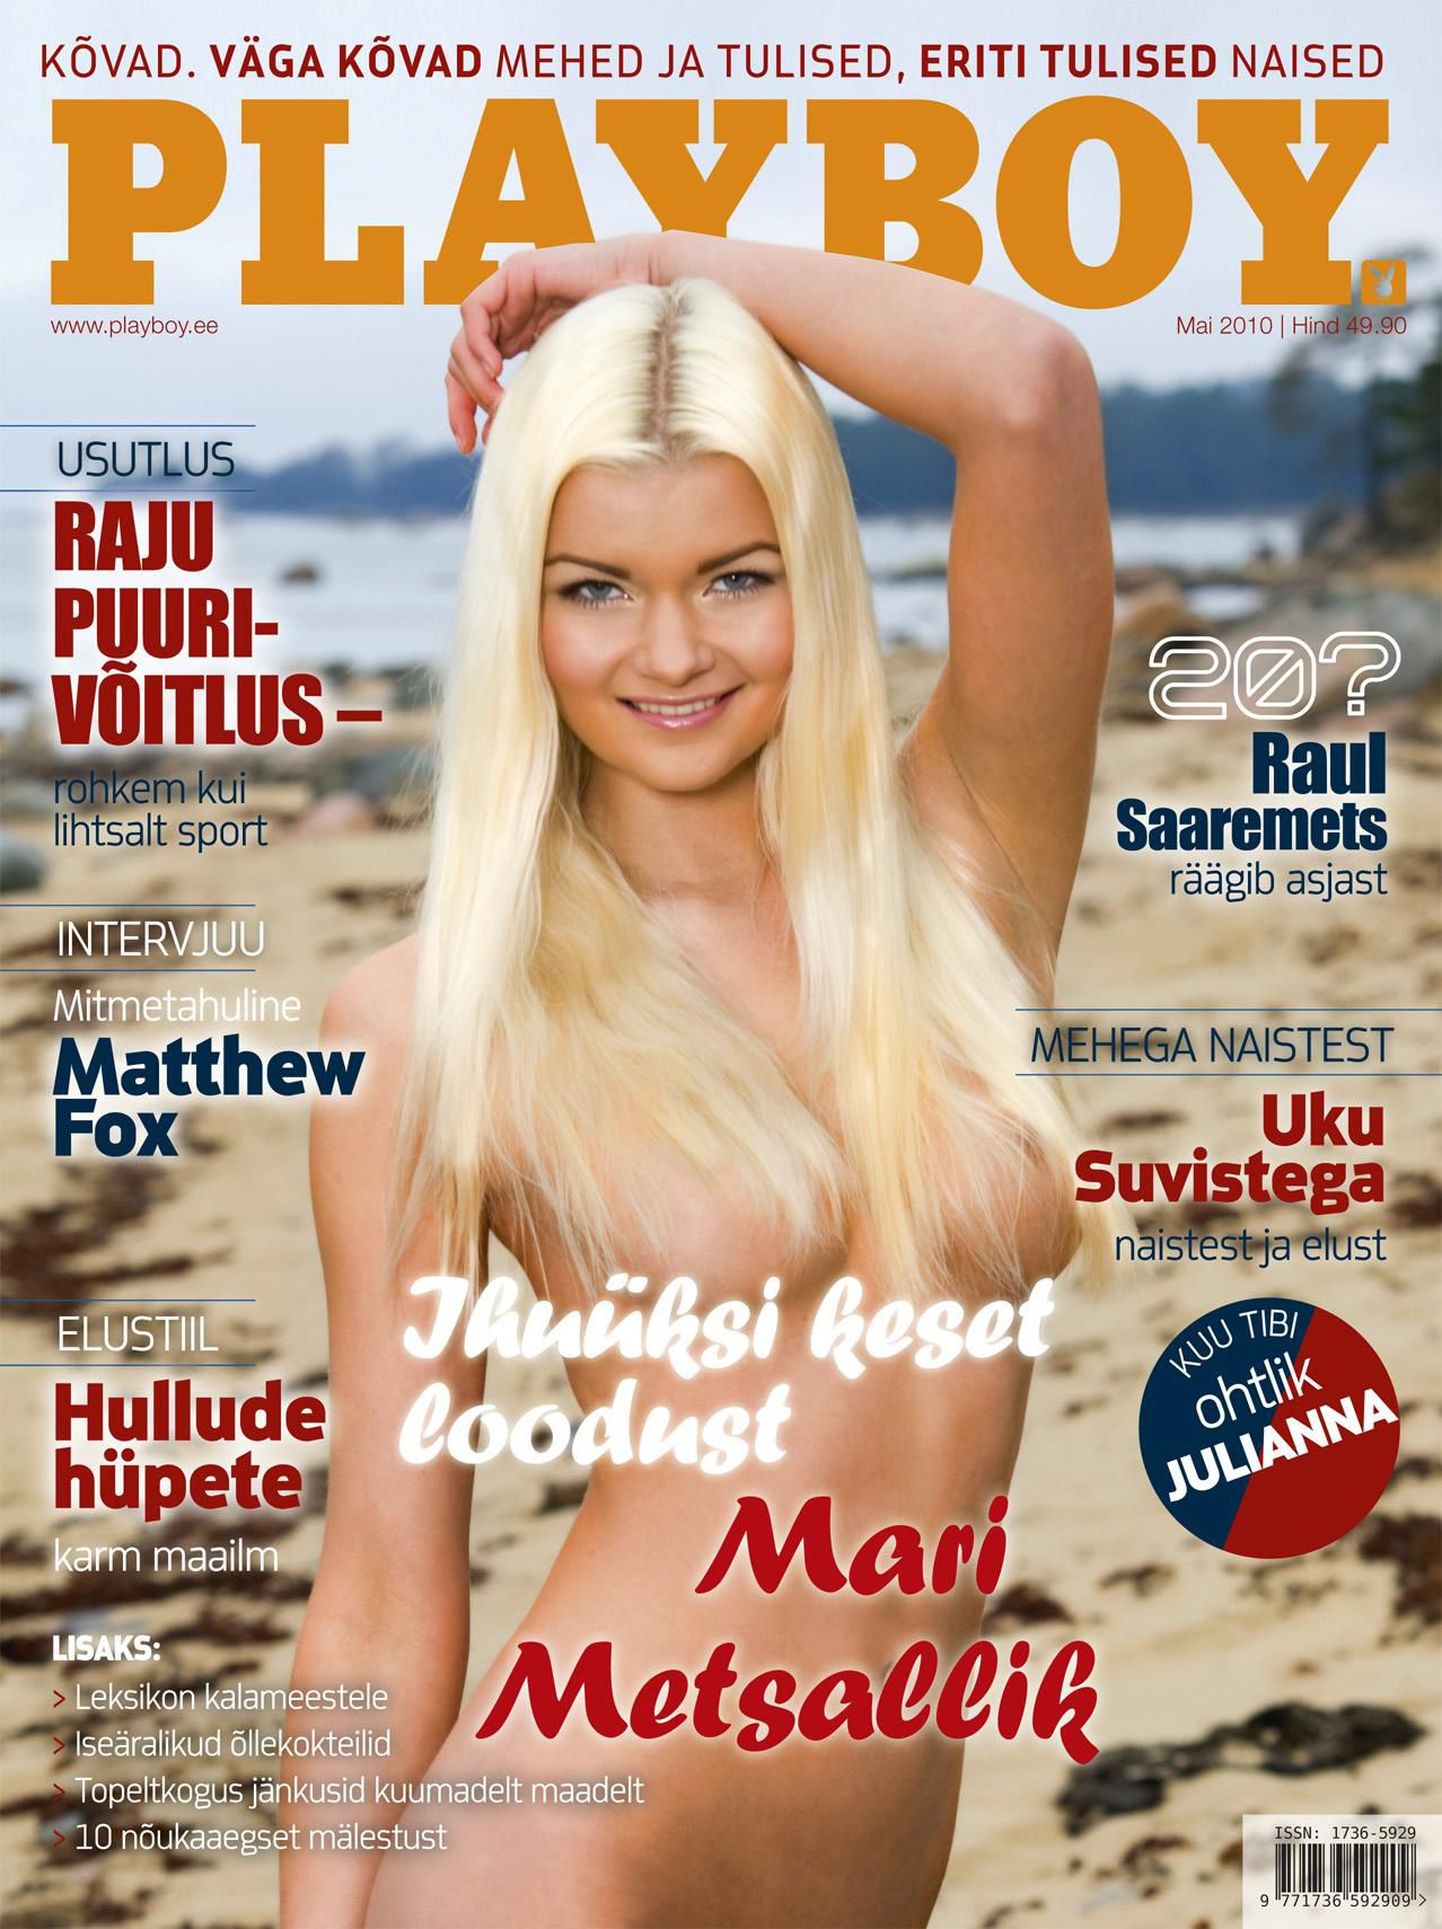 Модель Playboy из Эстонии Мари Метсаллик